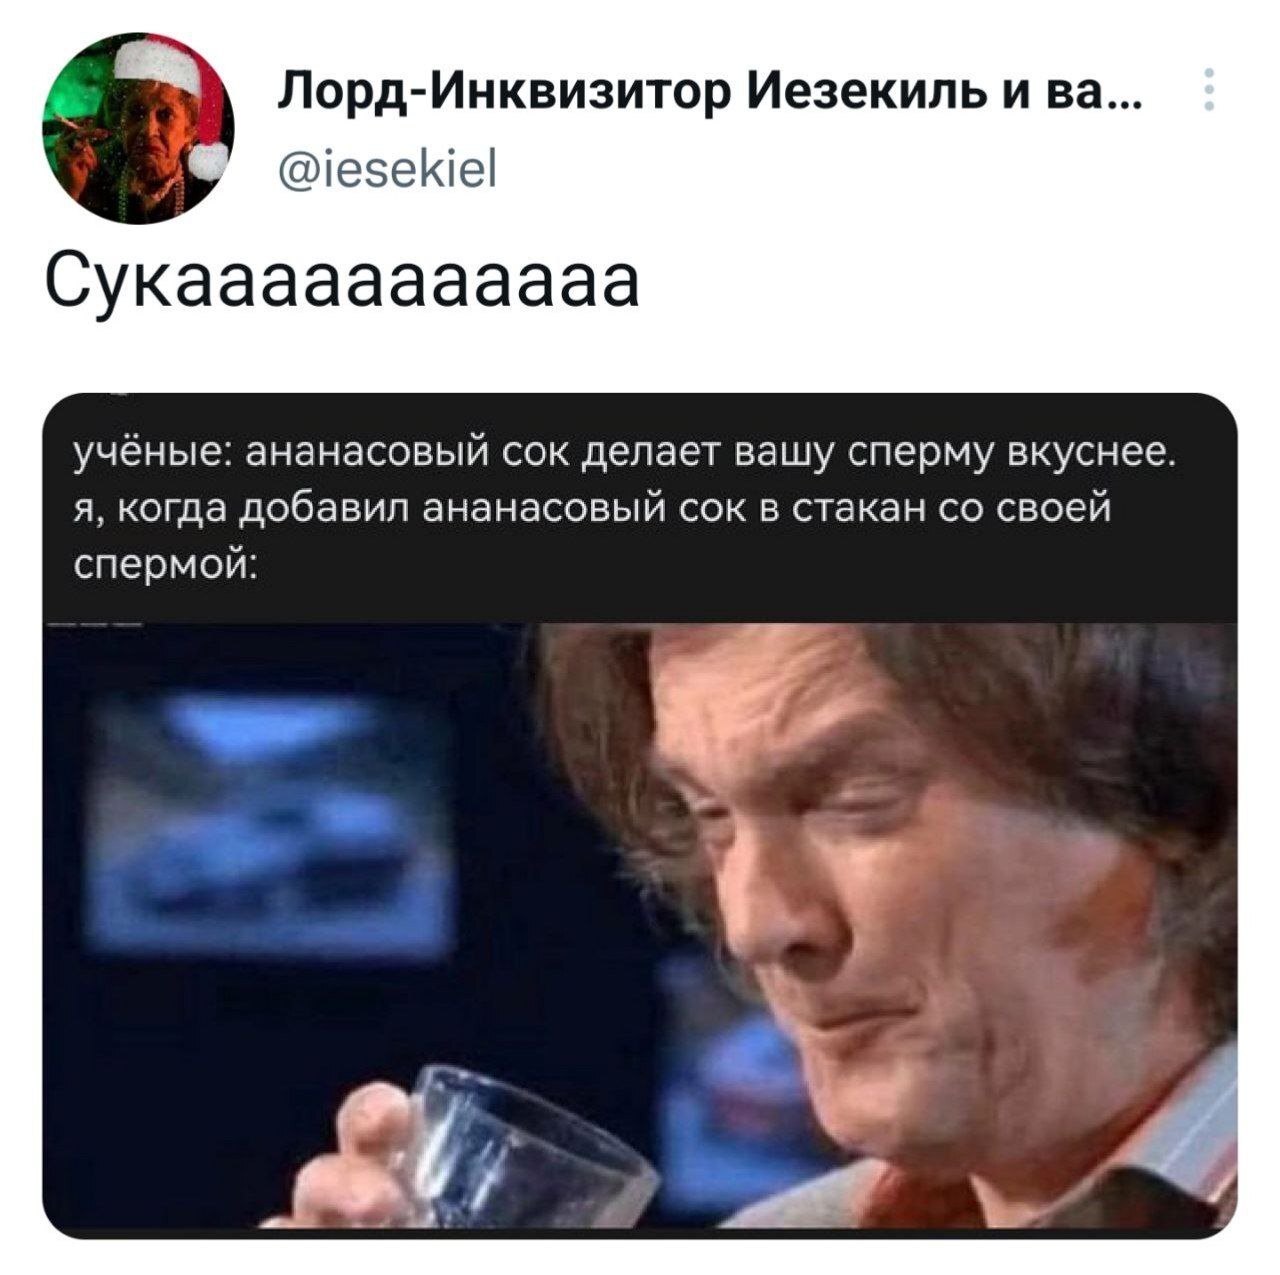 Русские девушки пьют сперму из бокалов